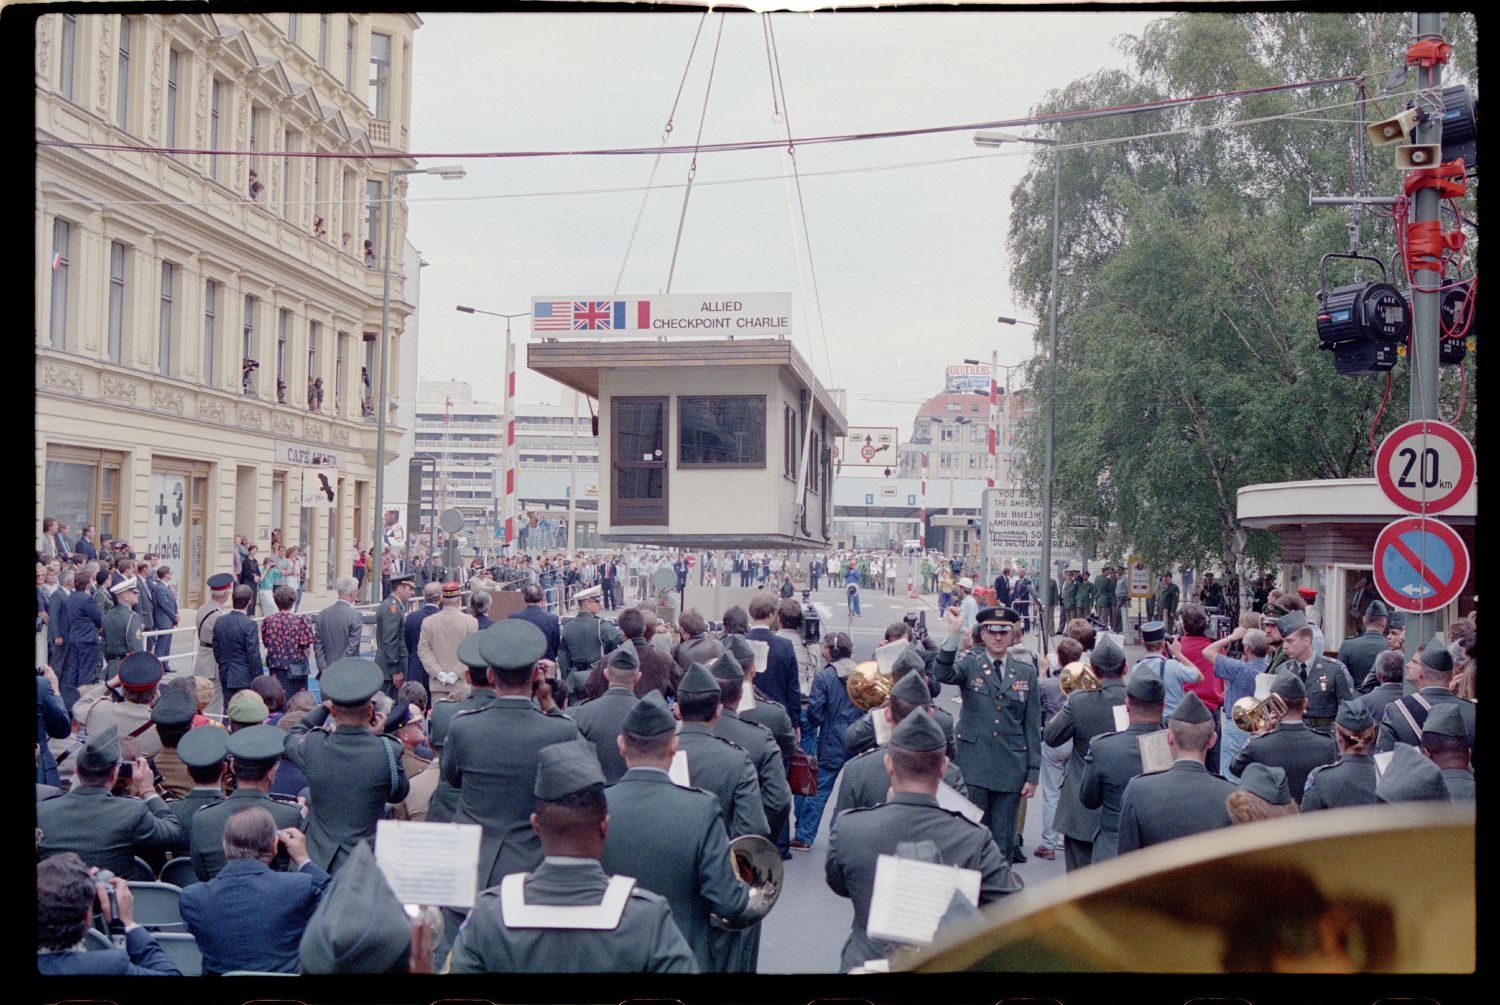 Fotografie: Abbau des Alliierten Kontrollhäuschens vom Checkpoint Charlie in Berlin-Kreuzberg (AlliiertenMuseum/U.S. Army Photograph Public Domain Mark)